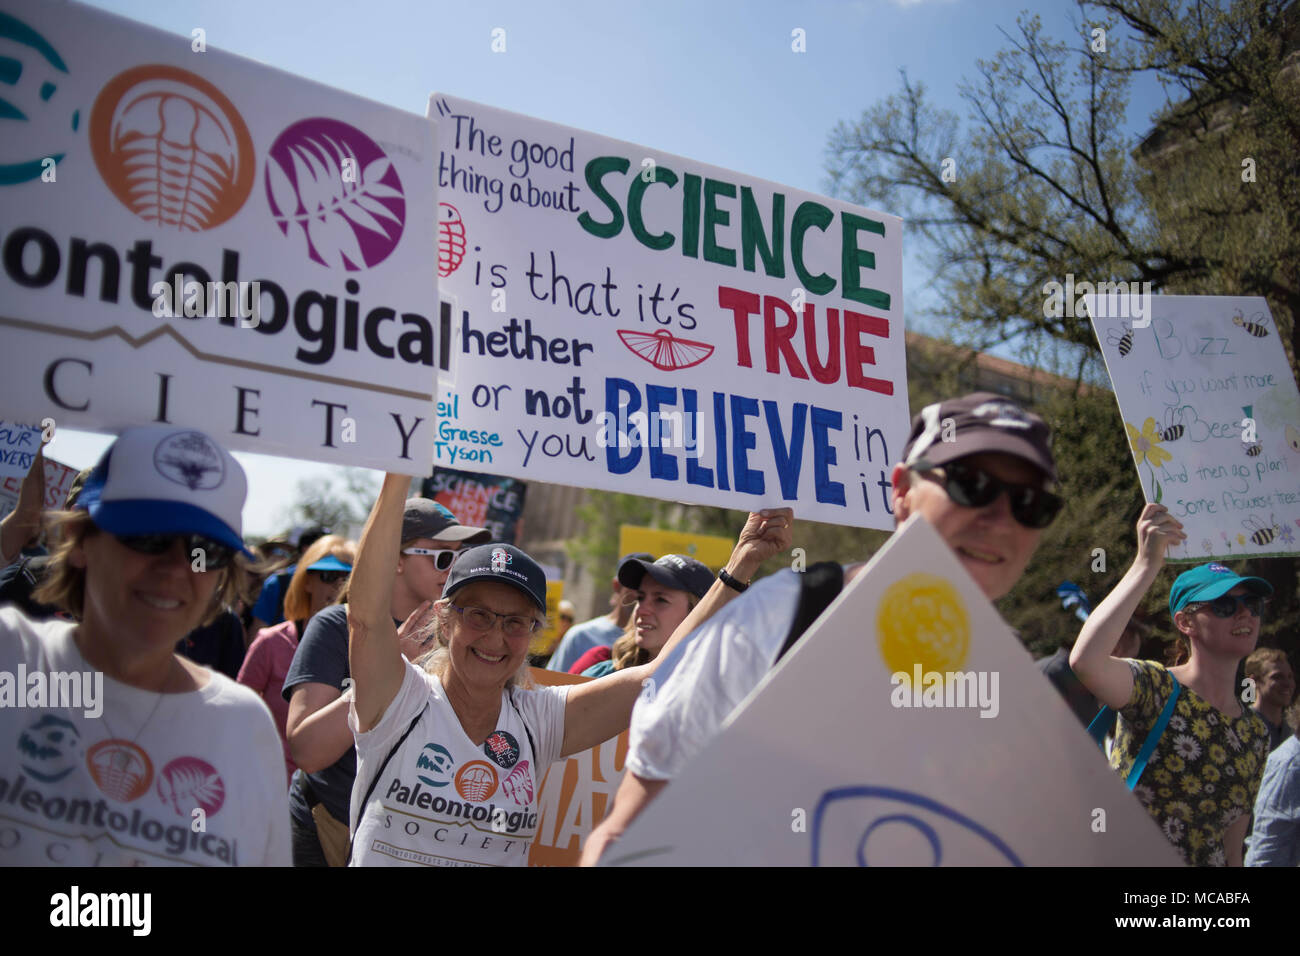 Washington, D.C., USA, 14. April 2018 Demonstranten gehen sie mit Schilder und Banner auf der Constitution Avenue im März für Wissenschaft, eine Rallye durch das gemeinnützige Nature Conservancy gefördert. Quelle: Michael Candelori/Alamy leben Nachrichten Stockfoto